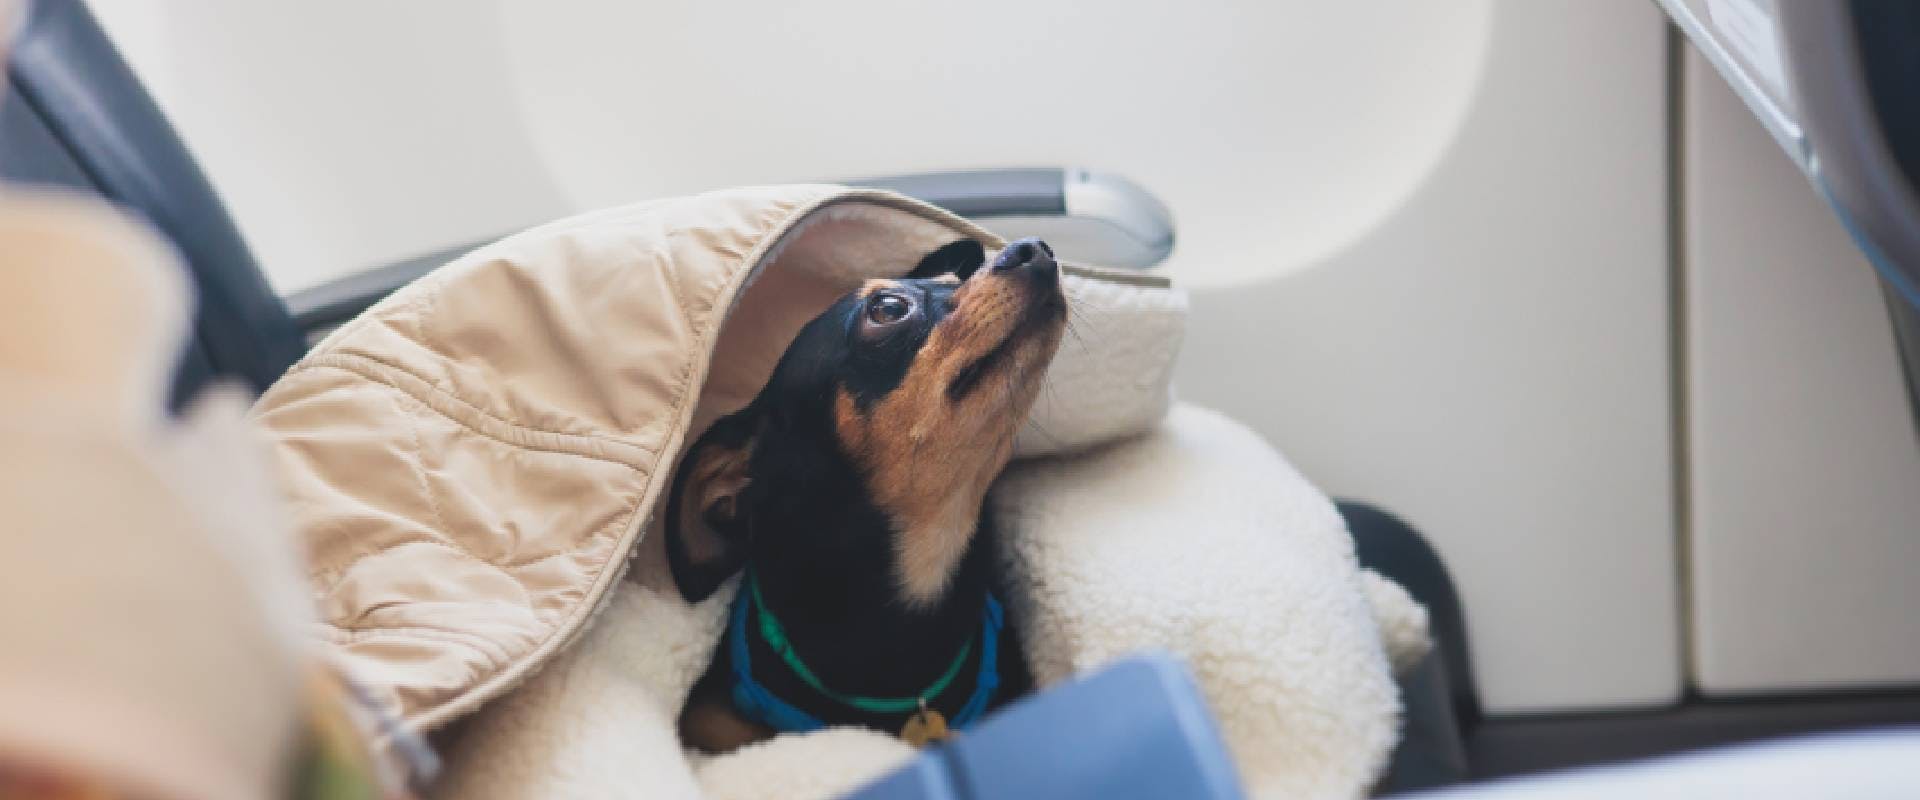 Dog in an aircraft cabin